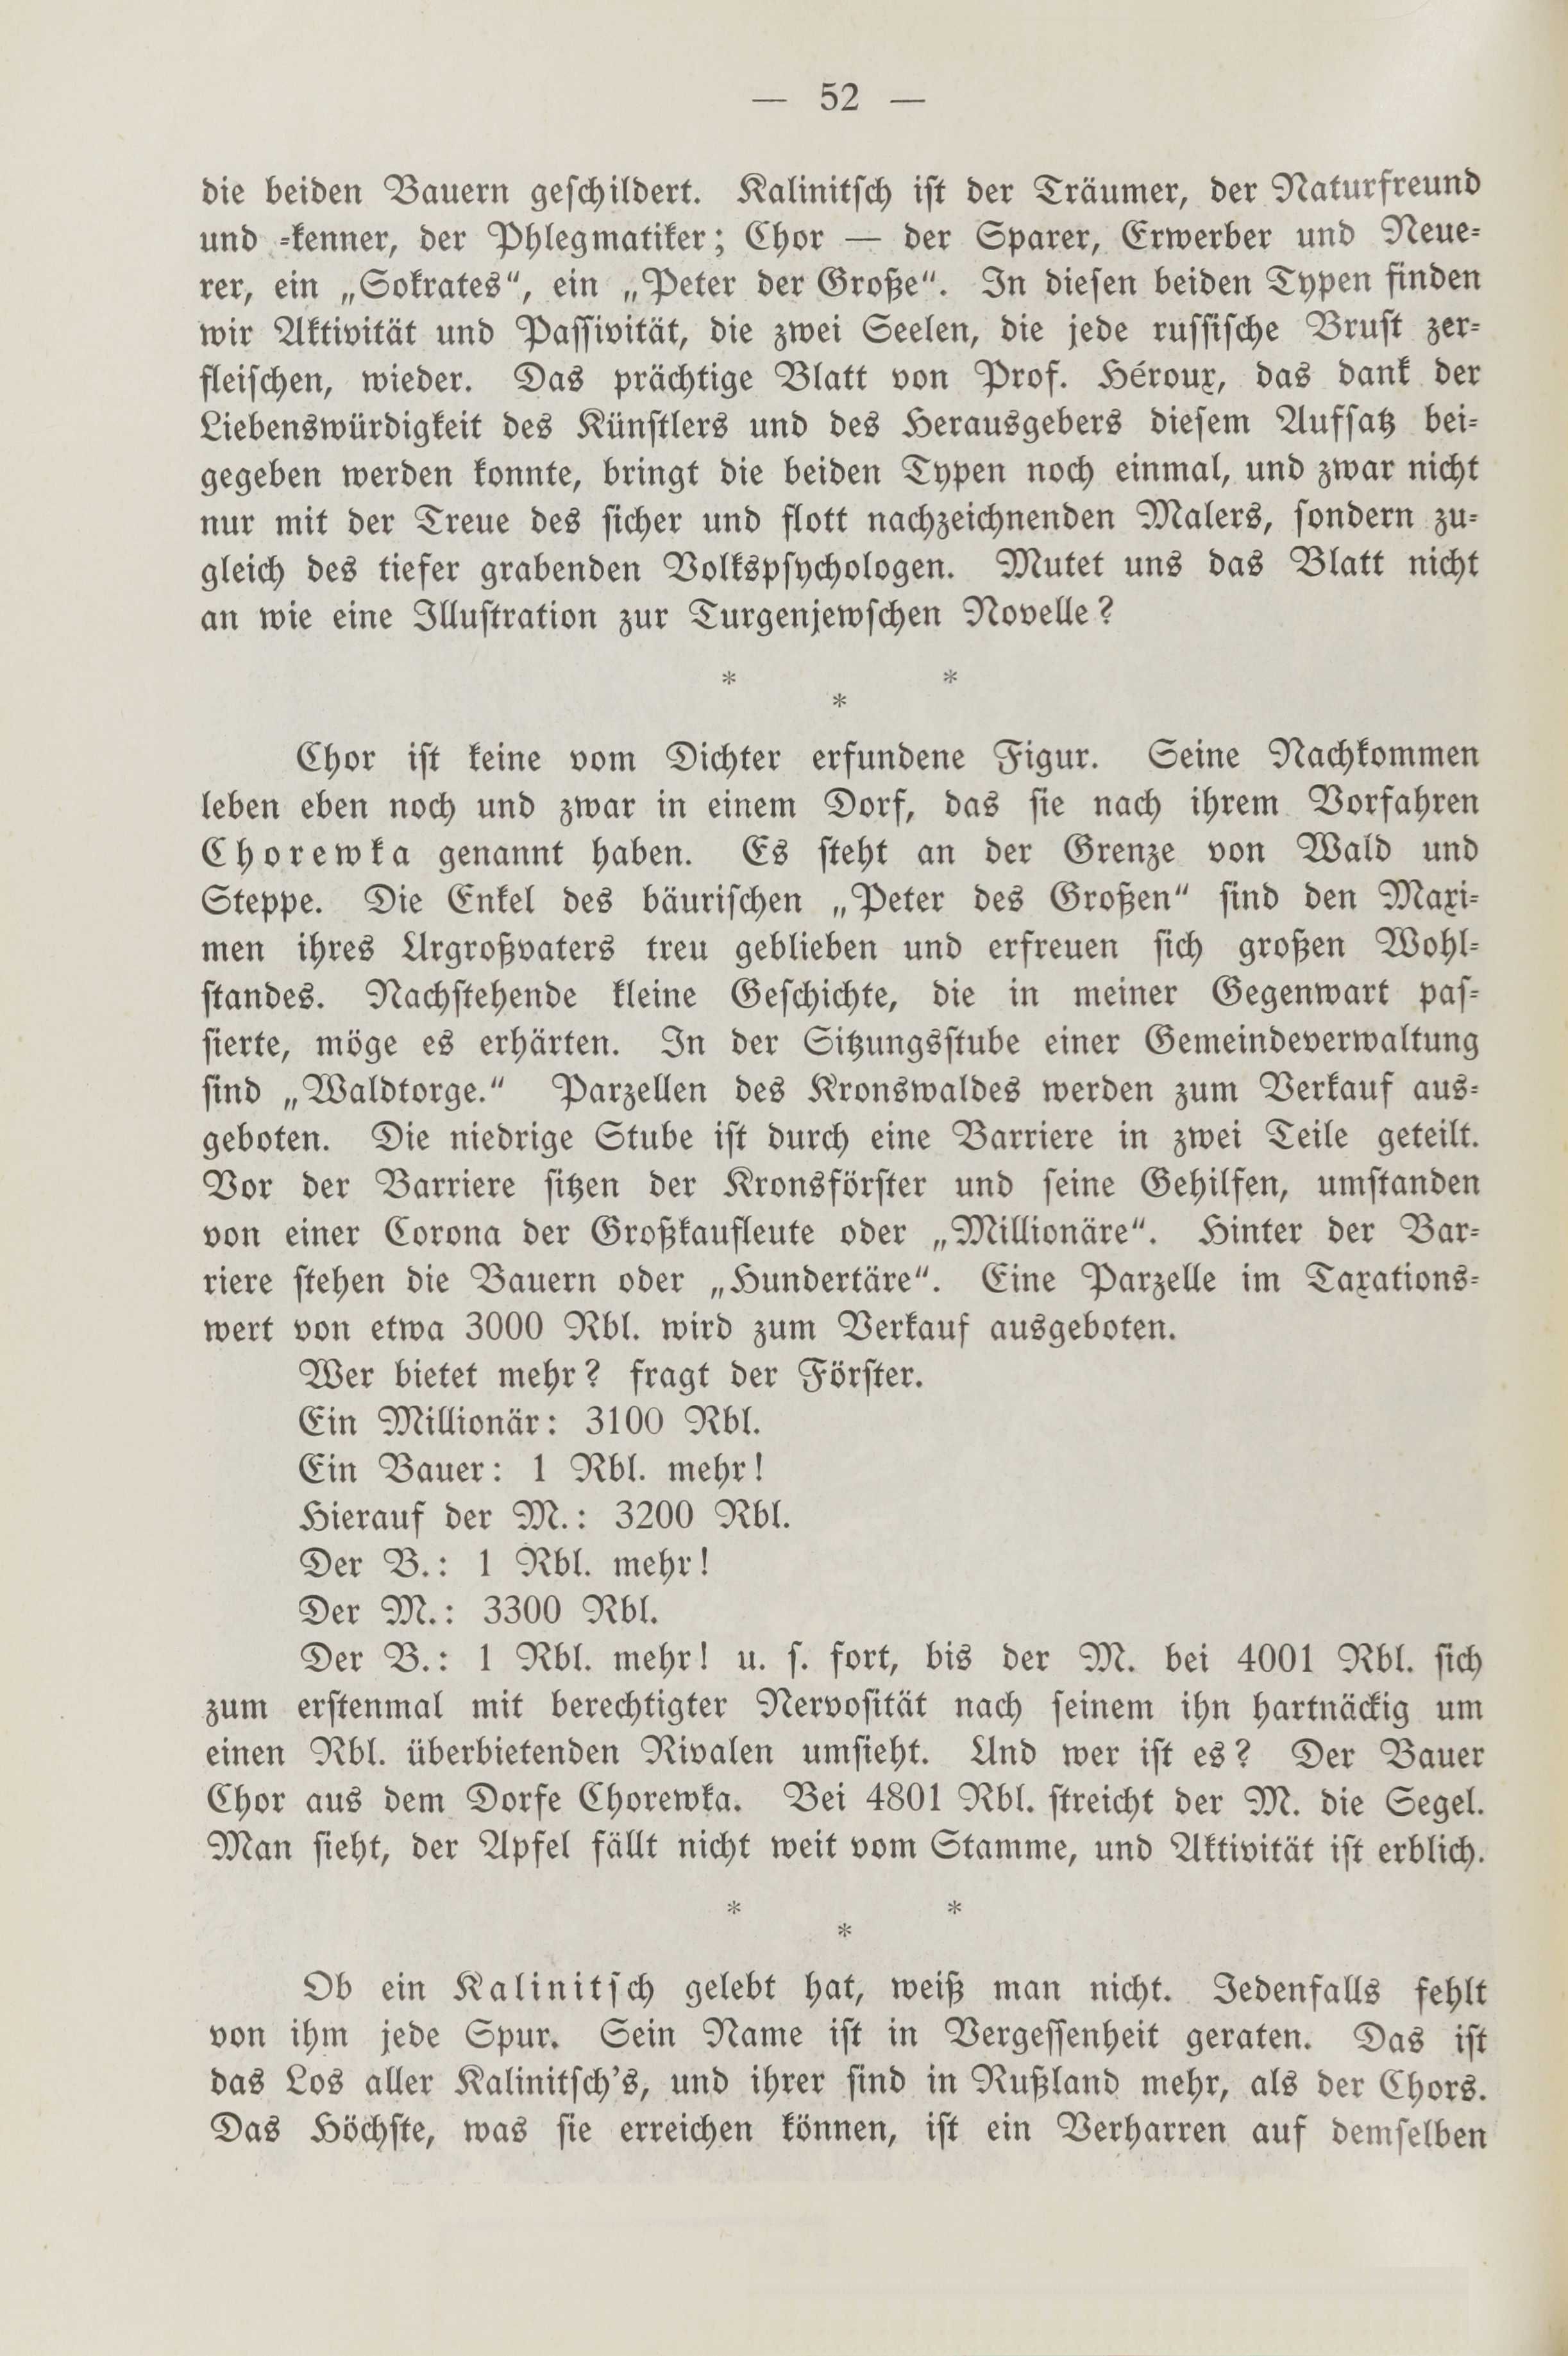 Deutsche Monatsschrift für Russland [2] (1913) | 56. (52) Põhitekst